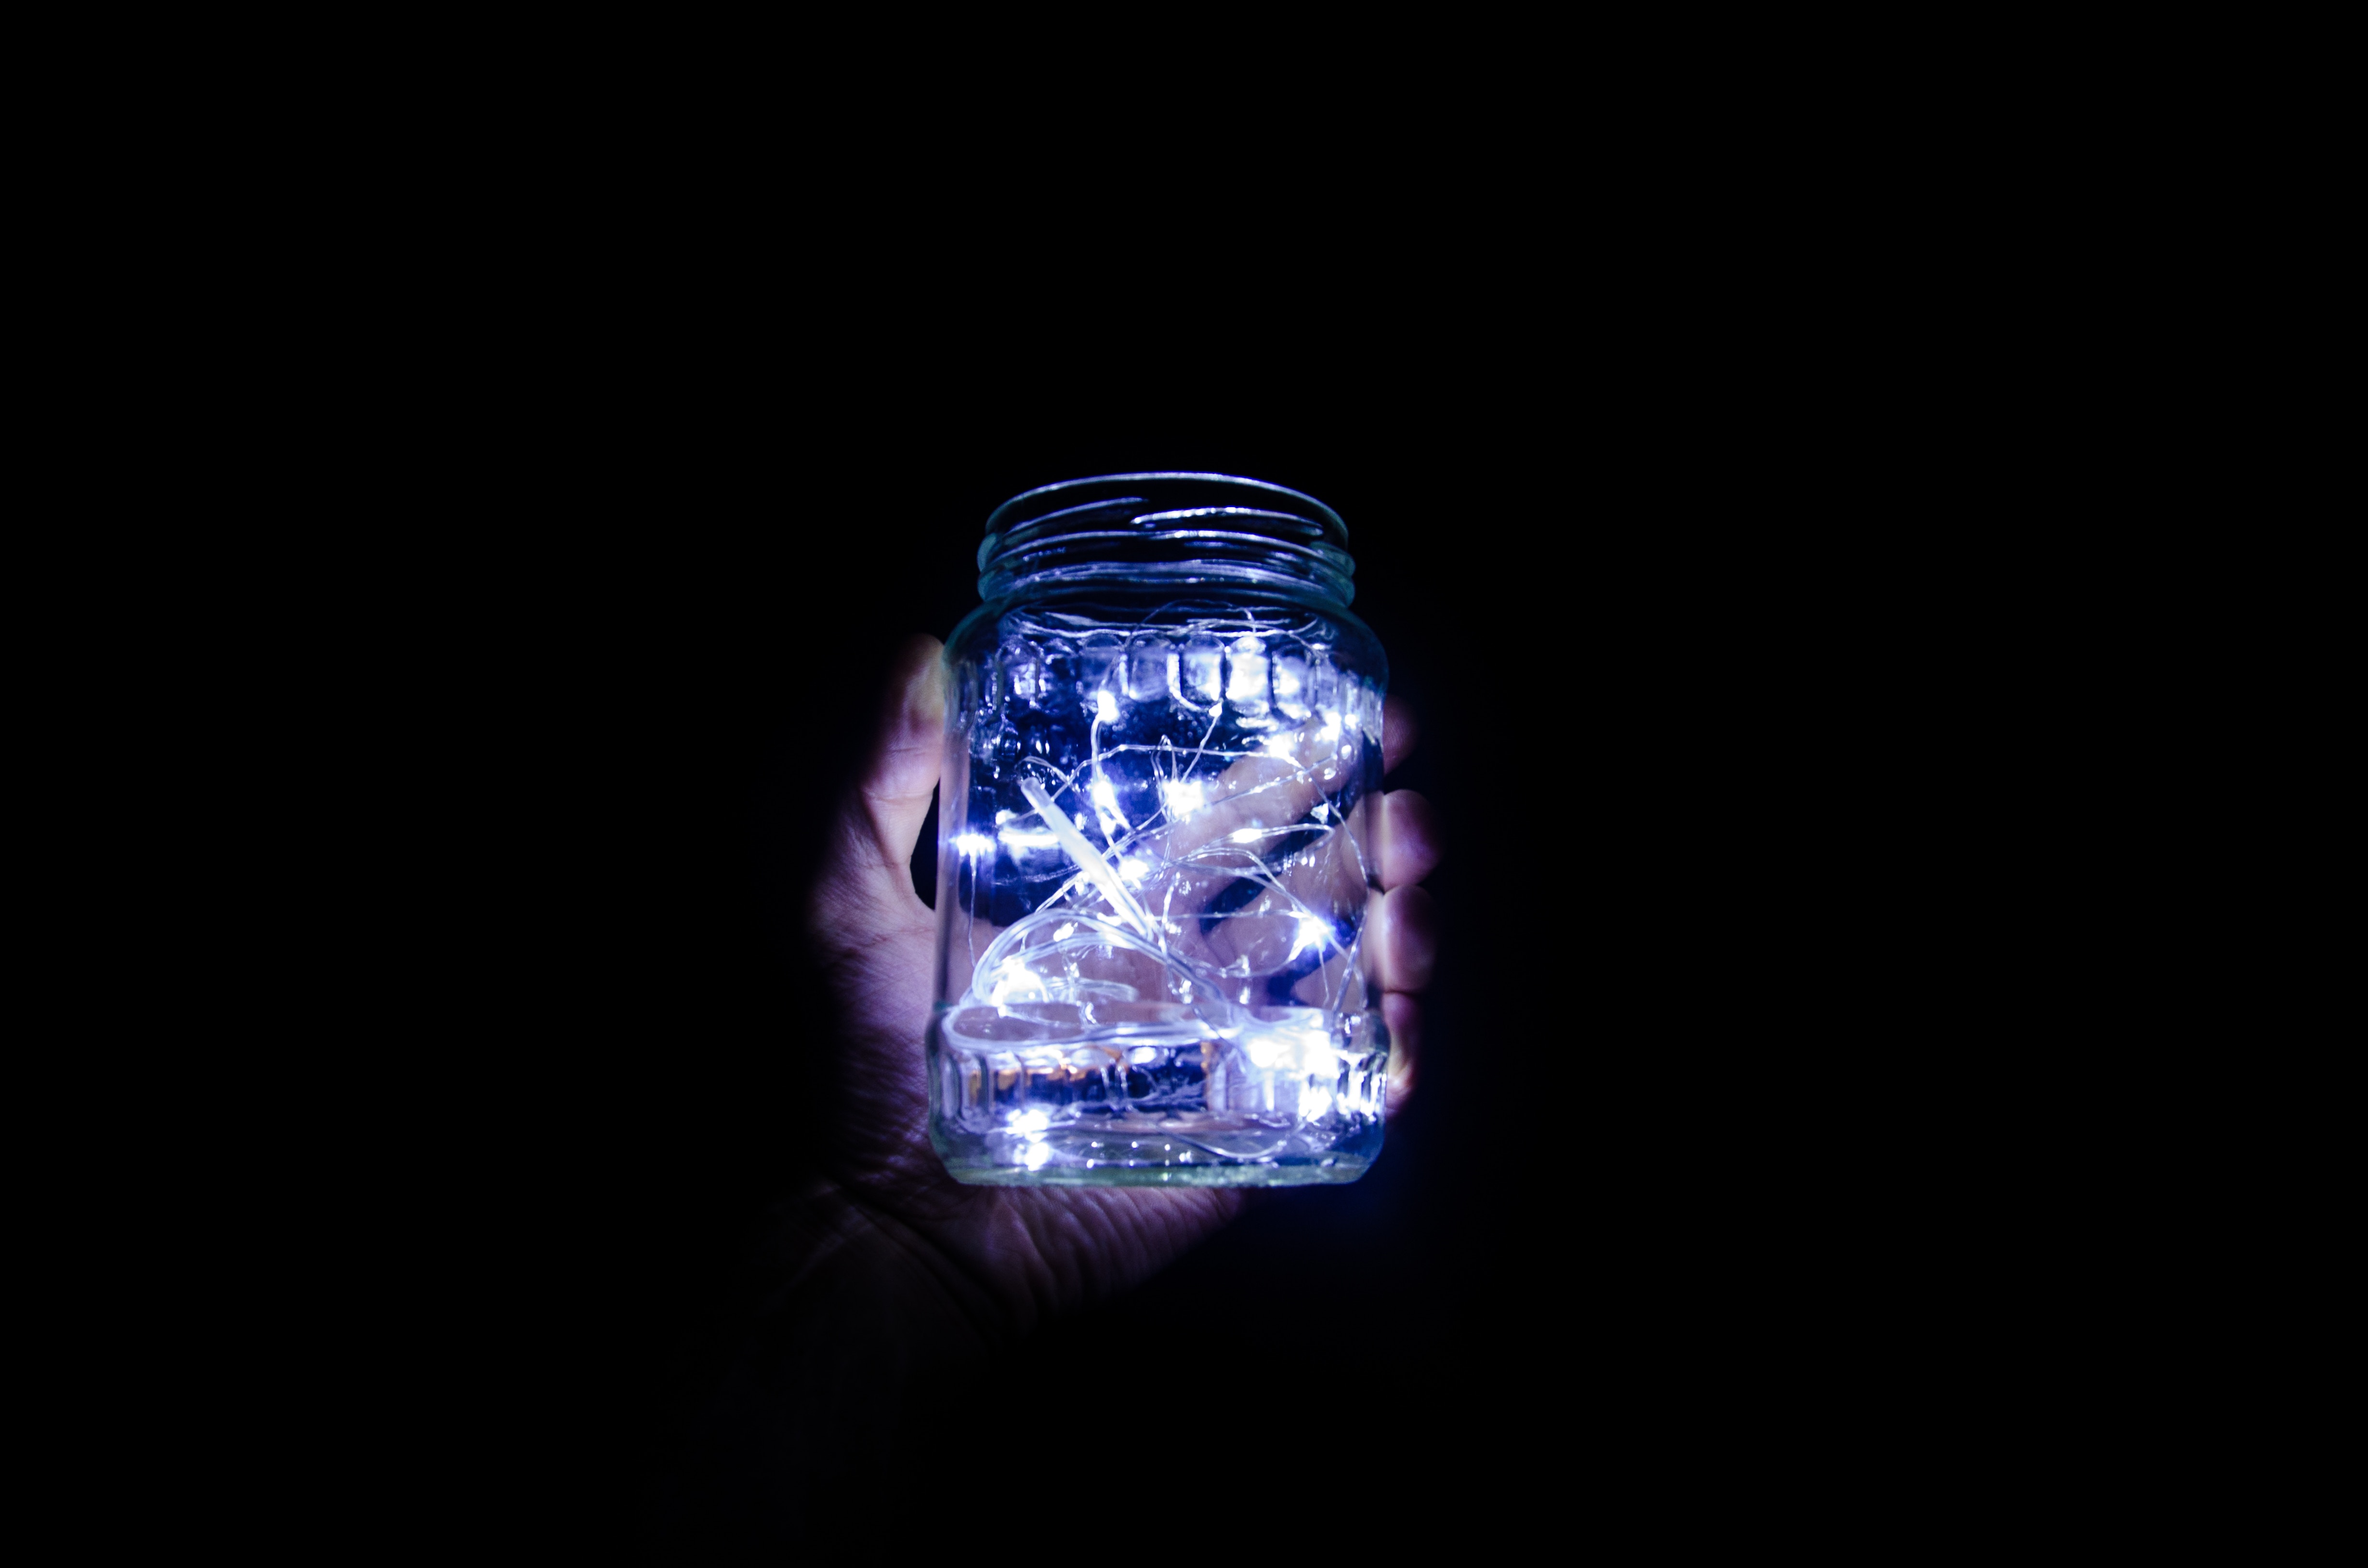 General 4916x3256 black background lights glass jar